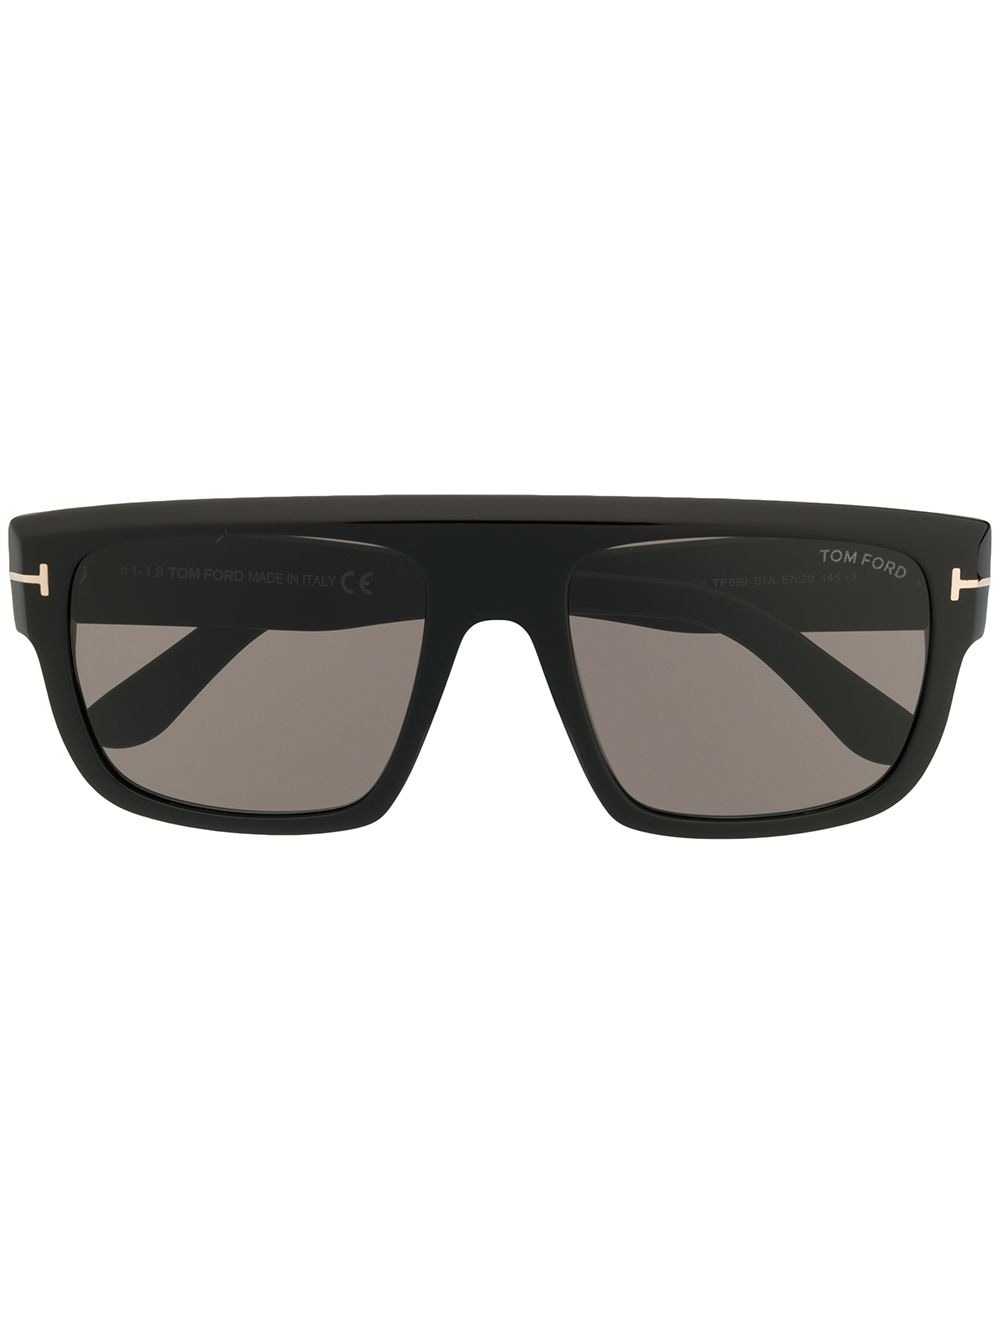 фото Tom Ford Eyewear солнцезащитные очки Alessio в прямоугольной оправе